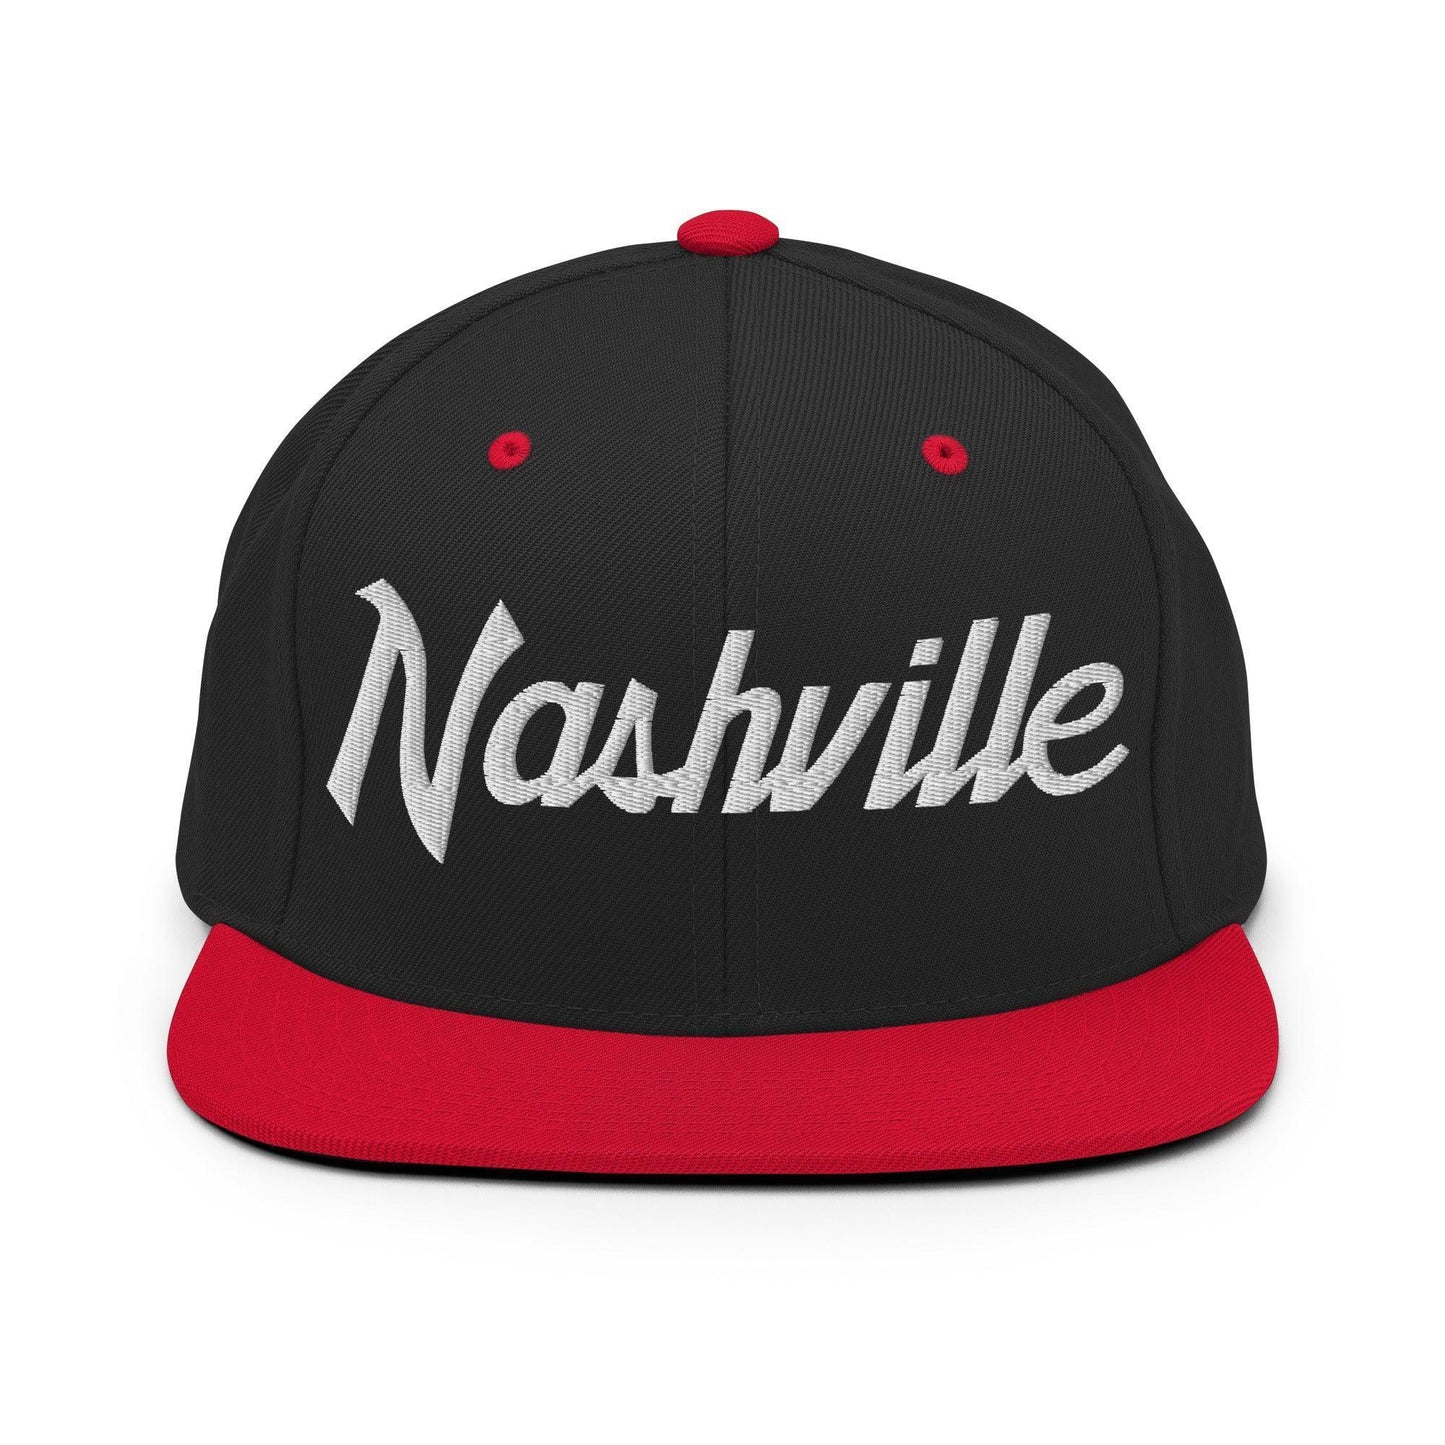 Nashville Script Snapback Hat Black Red